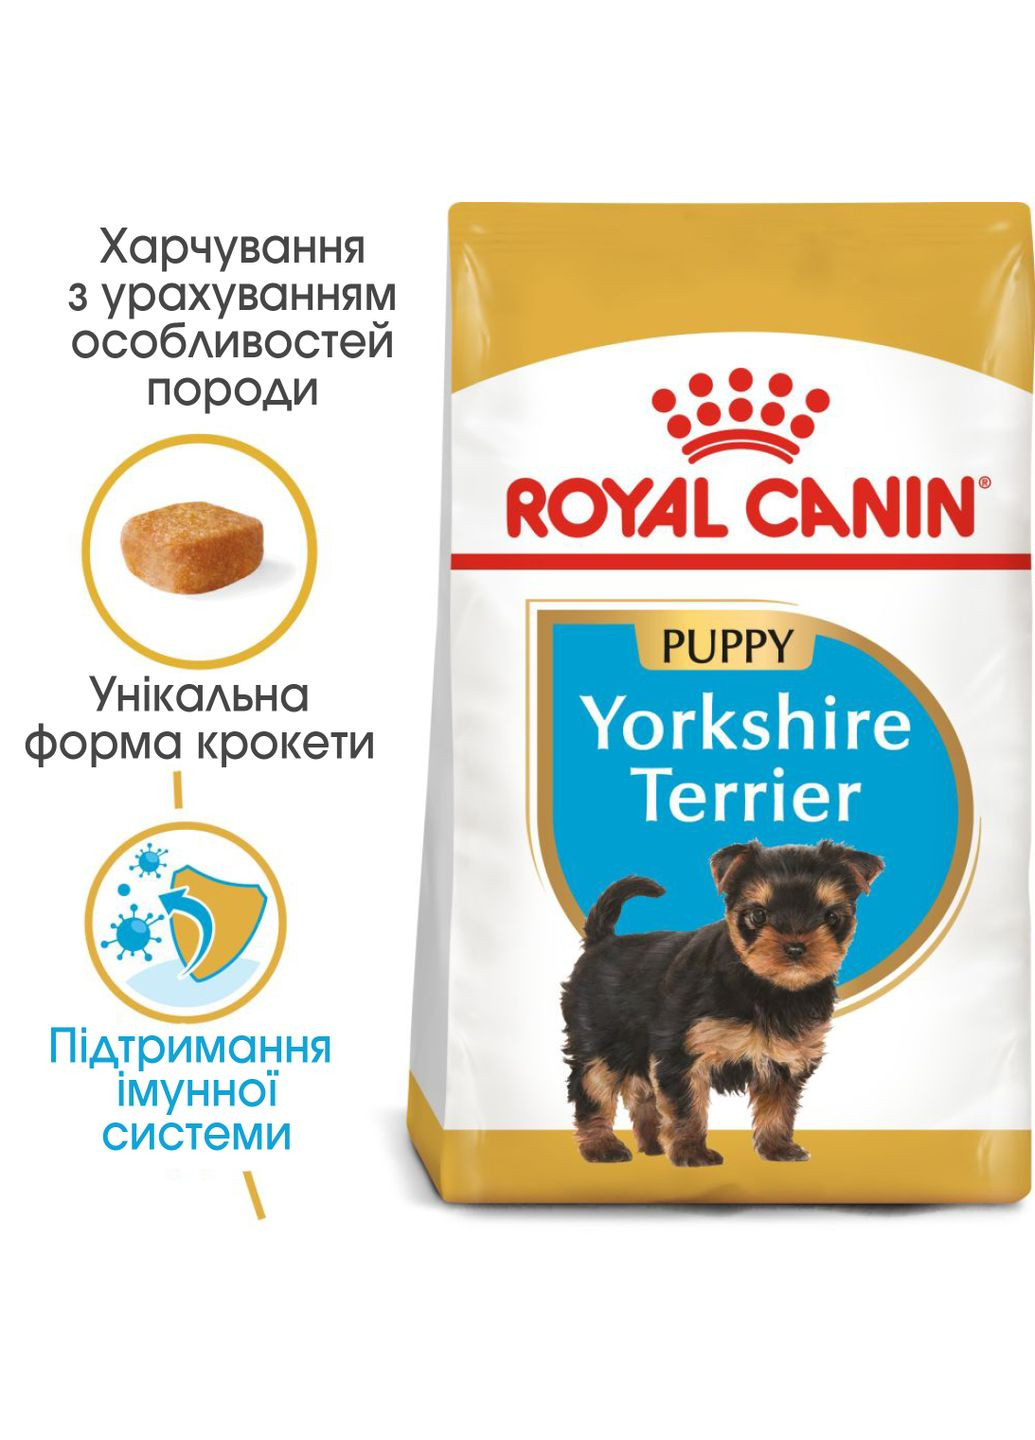 Сухой полнорационный корм для щенков Yorkshire Terrier Puppy породы йоркширский терьер века от Royal Canin (279565288)